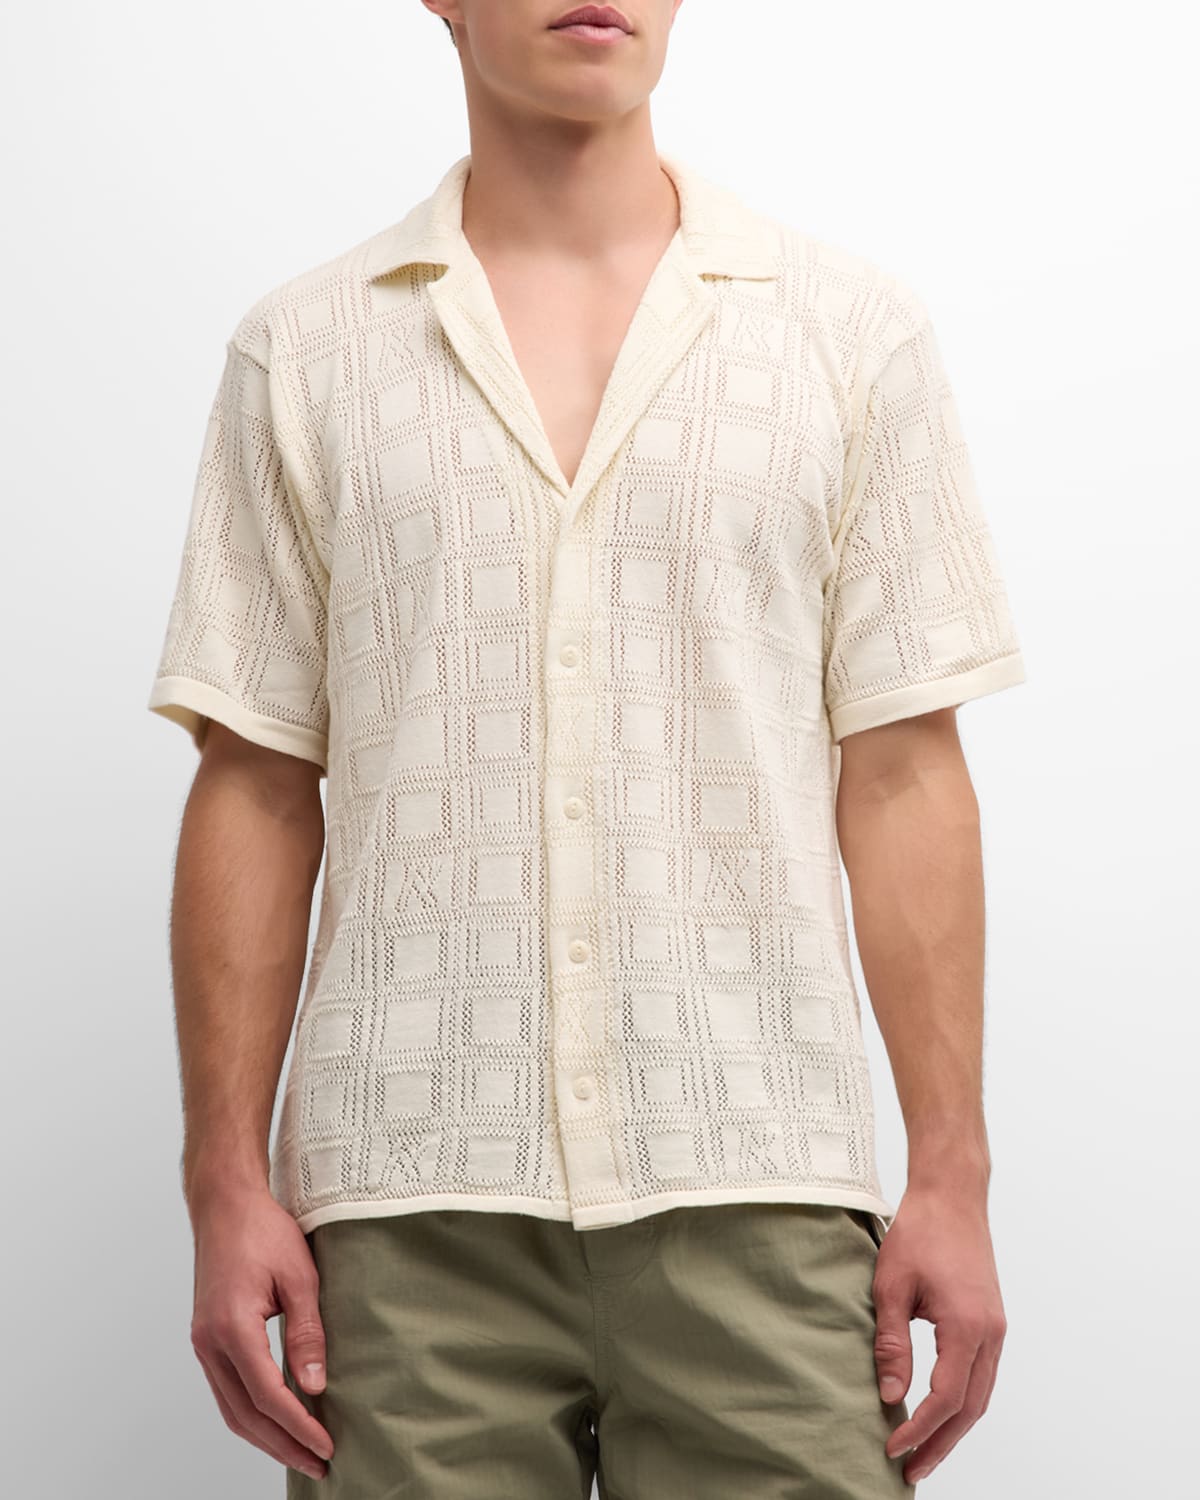 Men's Lace Knit Button-Down Shirt